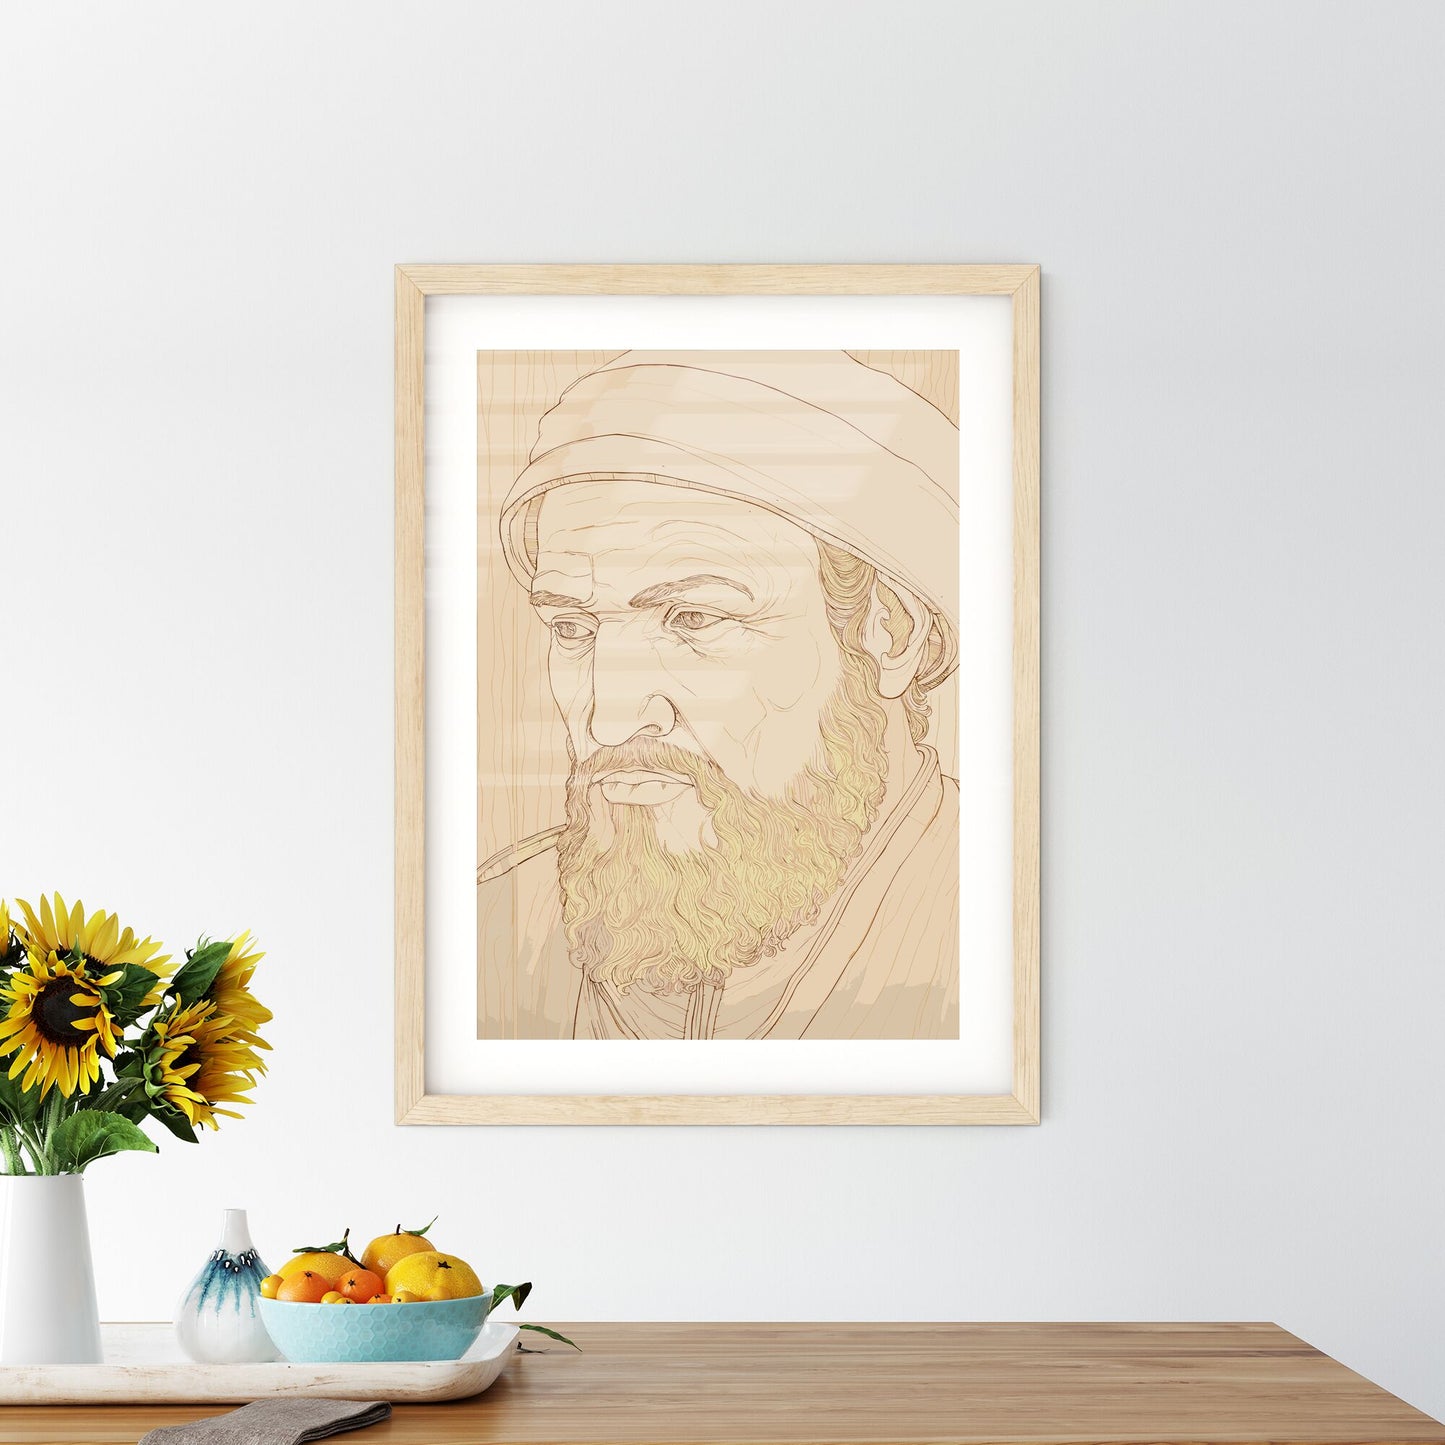 Portrait Of Albrecht Dürer - A Drawing Of A Man With A Beard Default Title